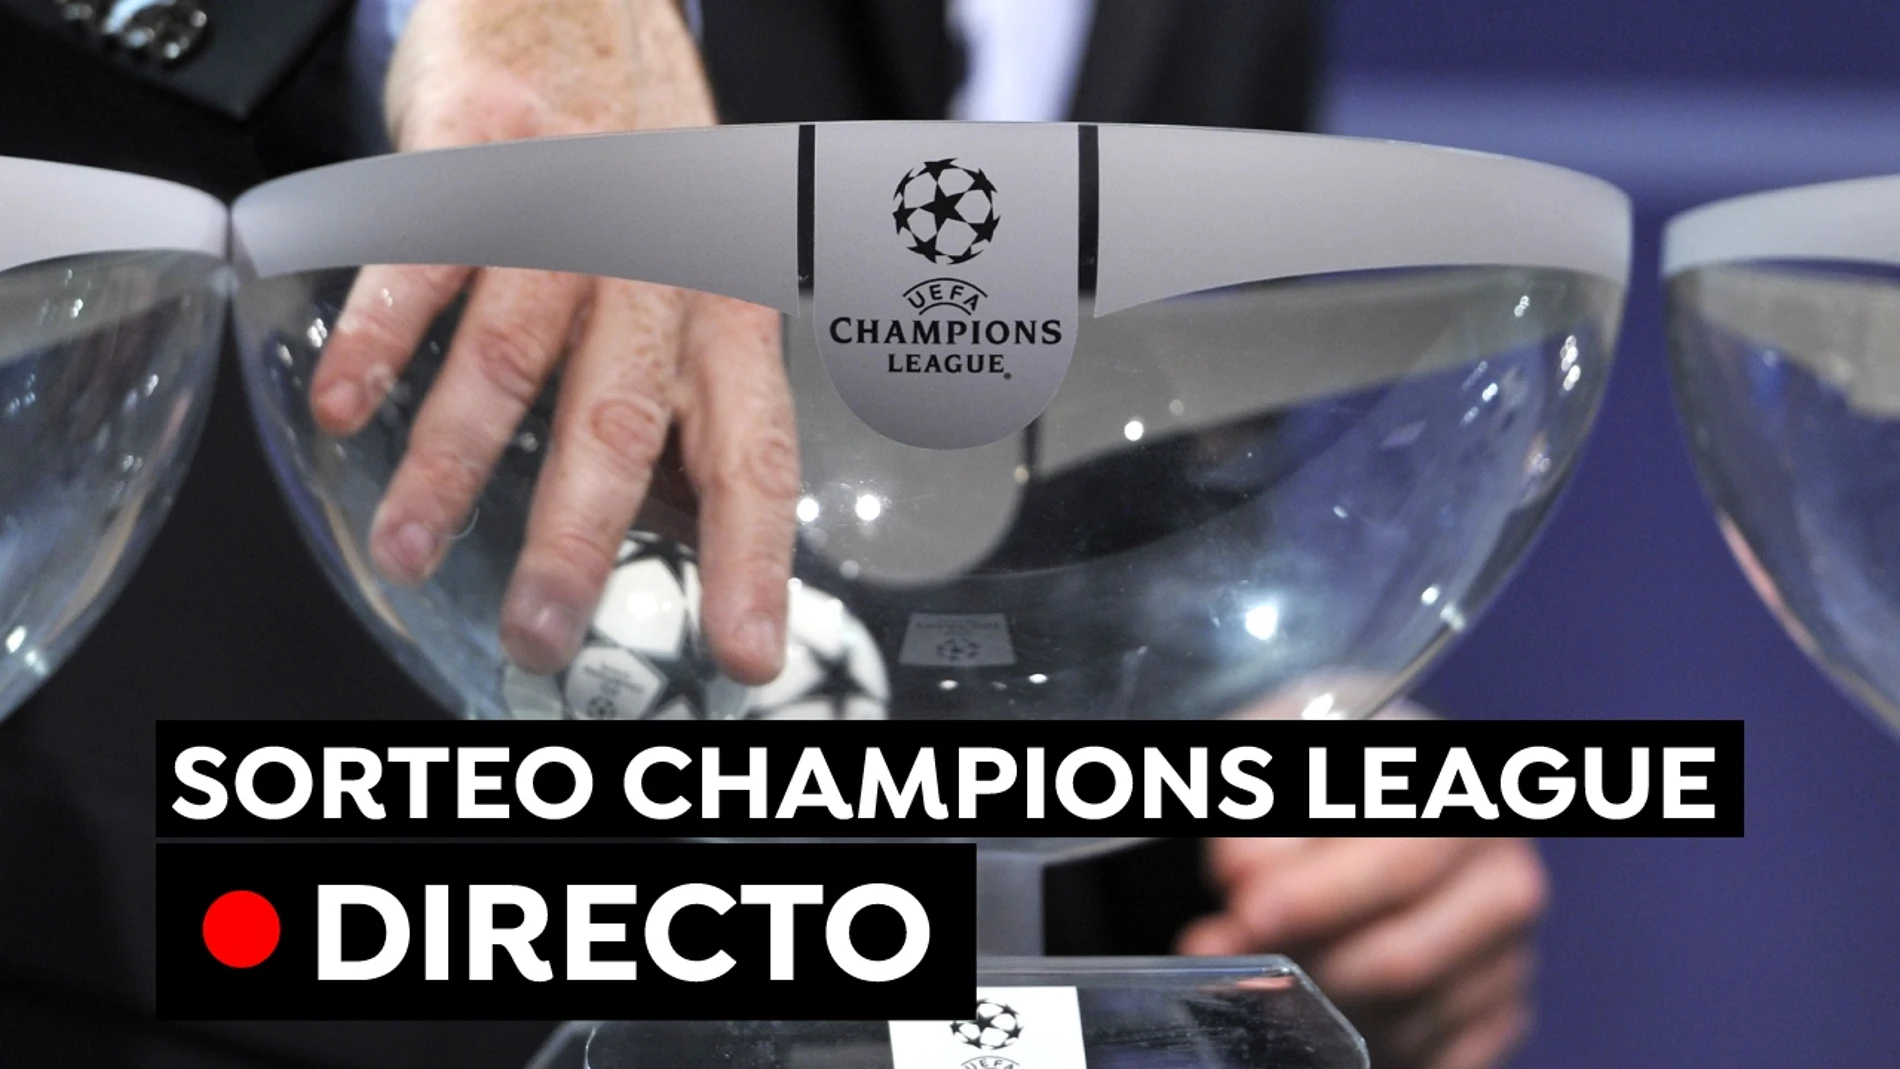 Sorteo Champions League: Emparejamientos y cruces de la fase de grupos, en directo